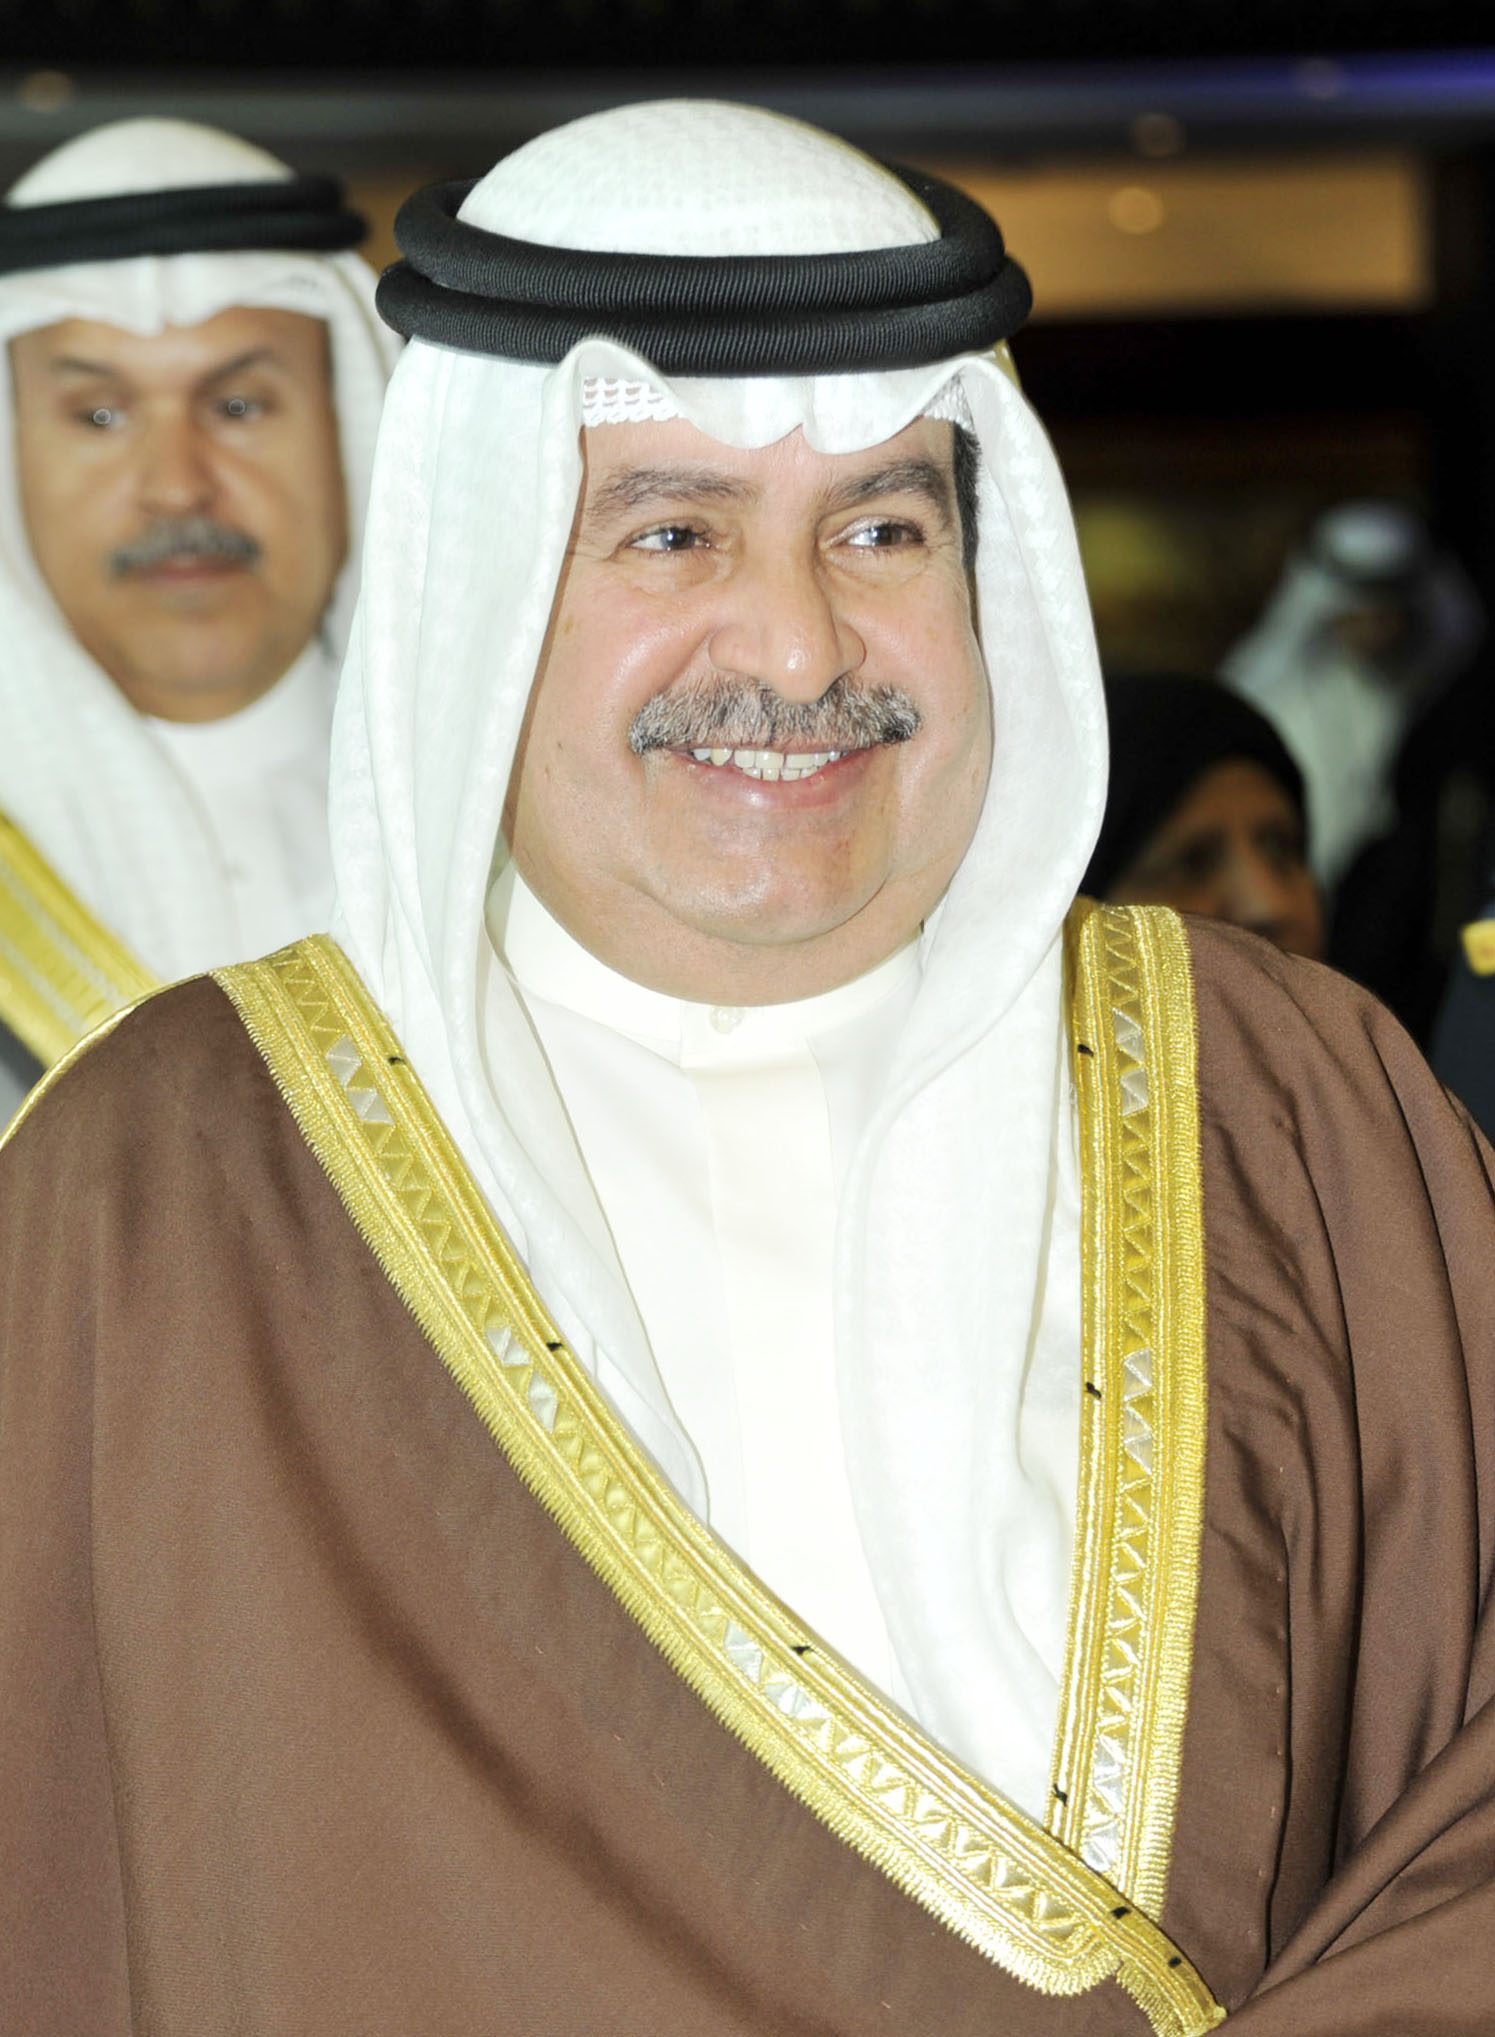 نائب رئيس مجلس الوزراء البحريني الشيخ علي بن خليفة آل خليفة